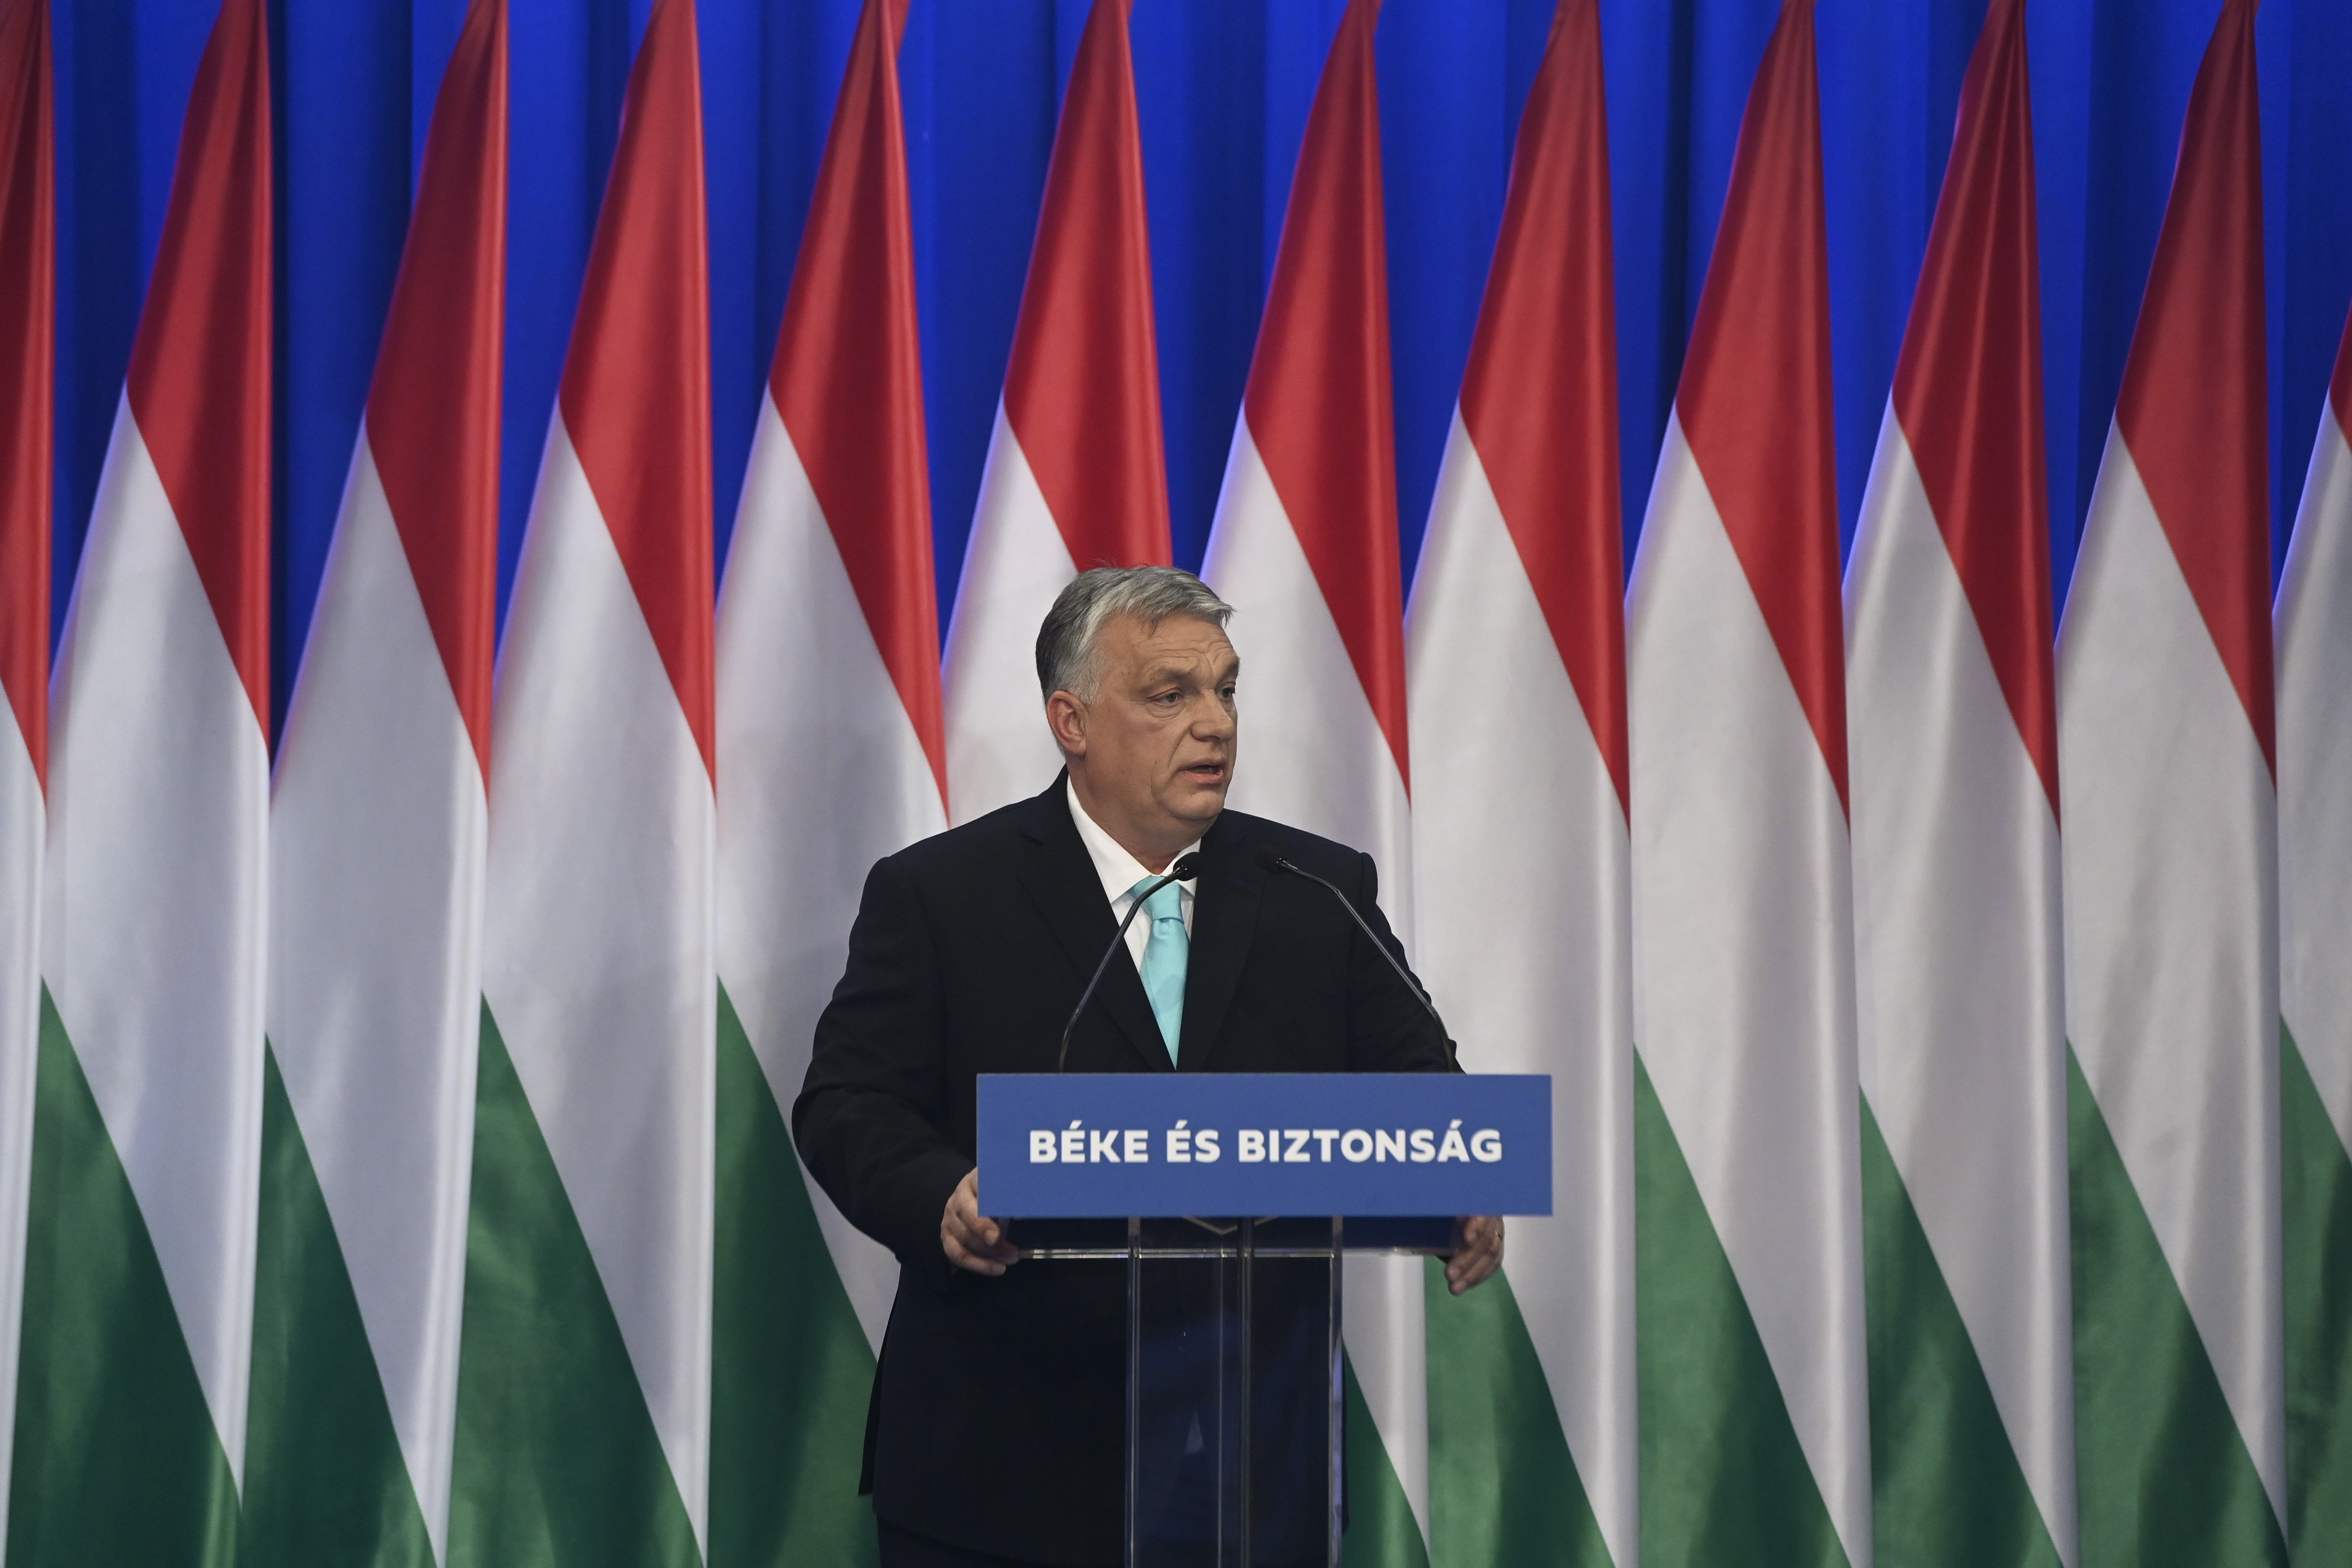 Erkölcsileg is helyes kimaradni a háborúból, Moszkva nem fenyegeti Európa biztonságát – Orbán Viktor évet értékelt